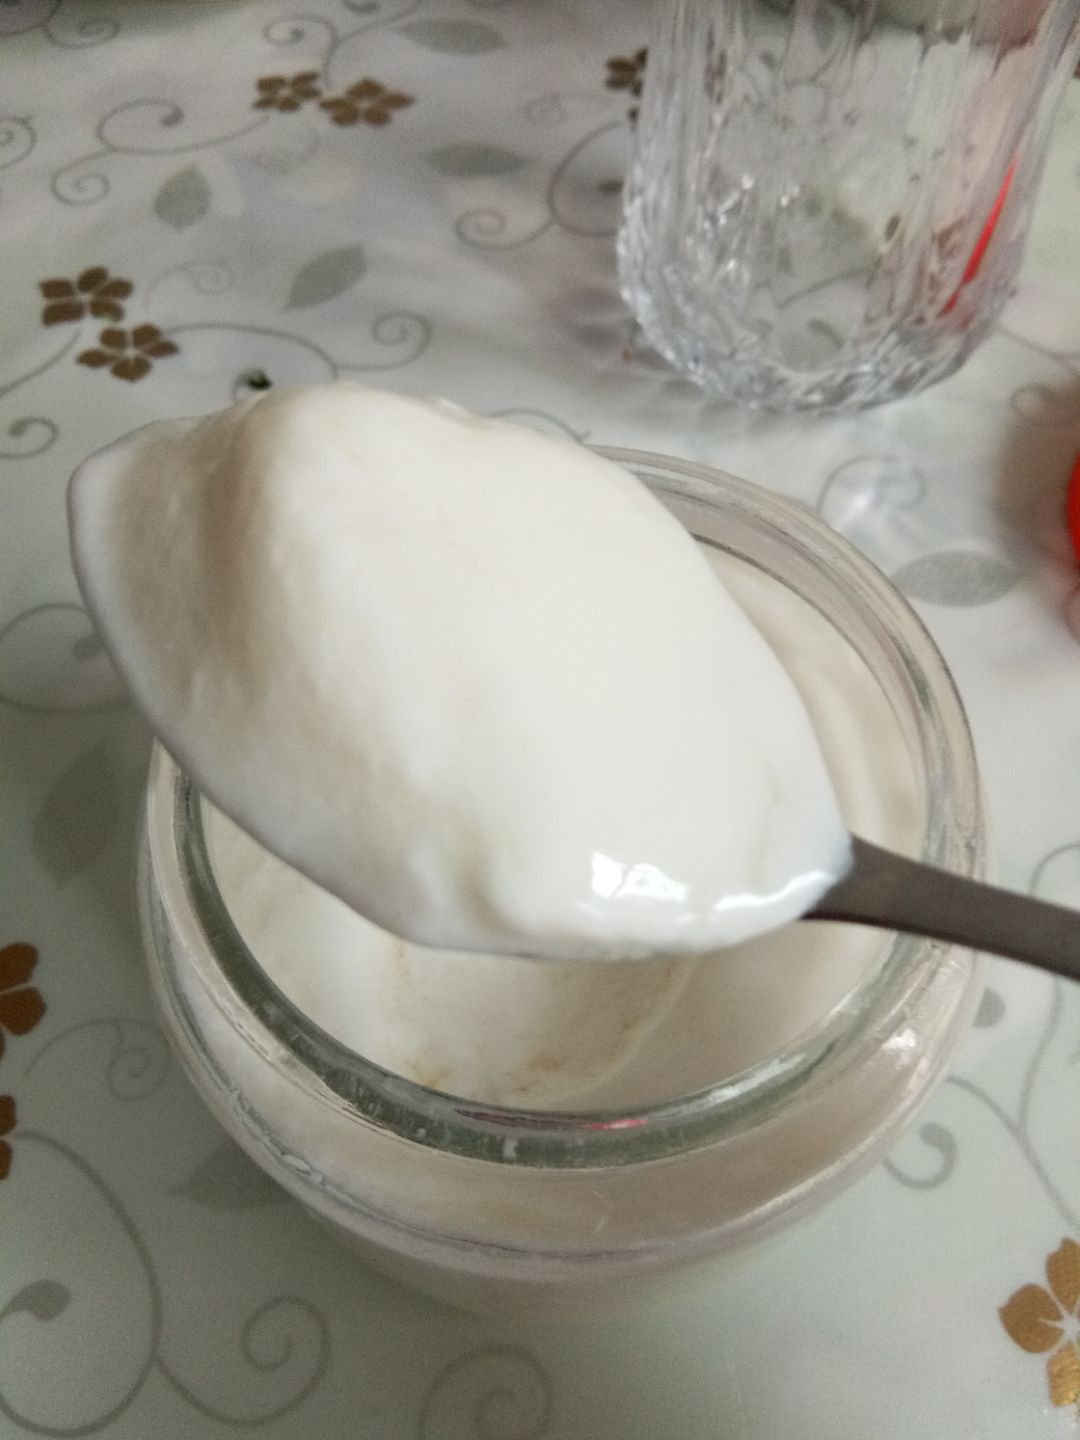 很多人认为做酸奶要买酸奶机，其实只要家里有稍微比较保温的容器就能做酸奶，比如电饭煲。电饭煲做酸奶超级简单，做出来的味道跟超市买的一模一样。